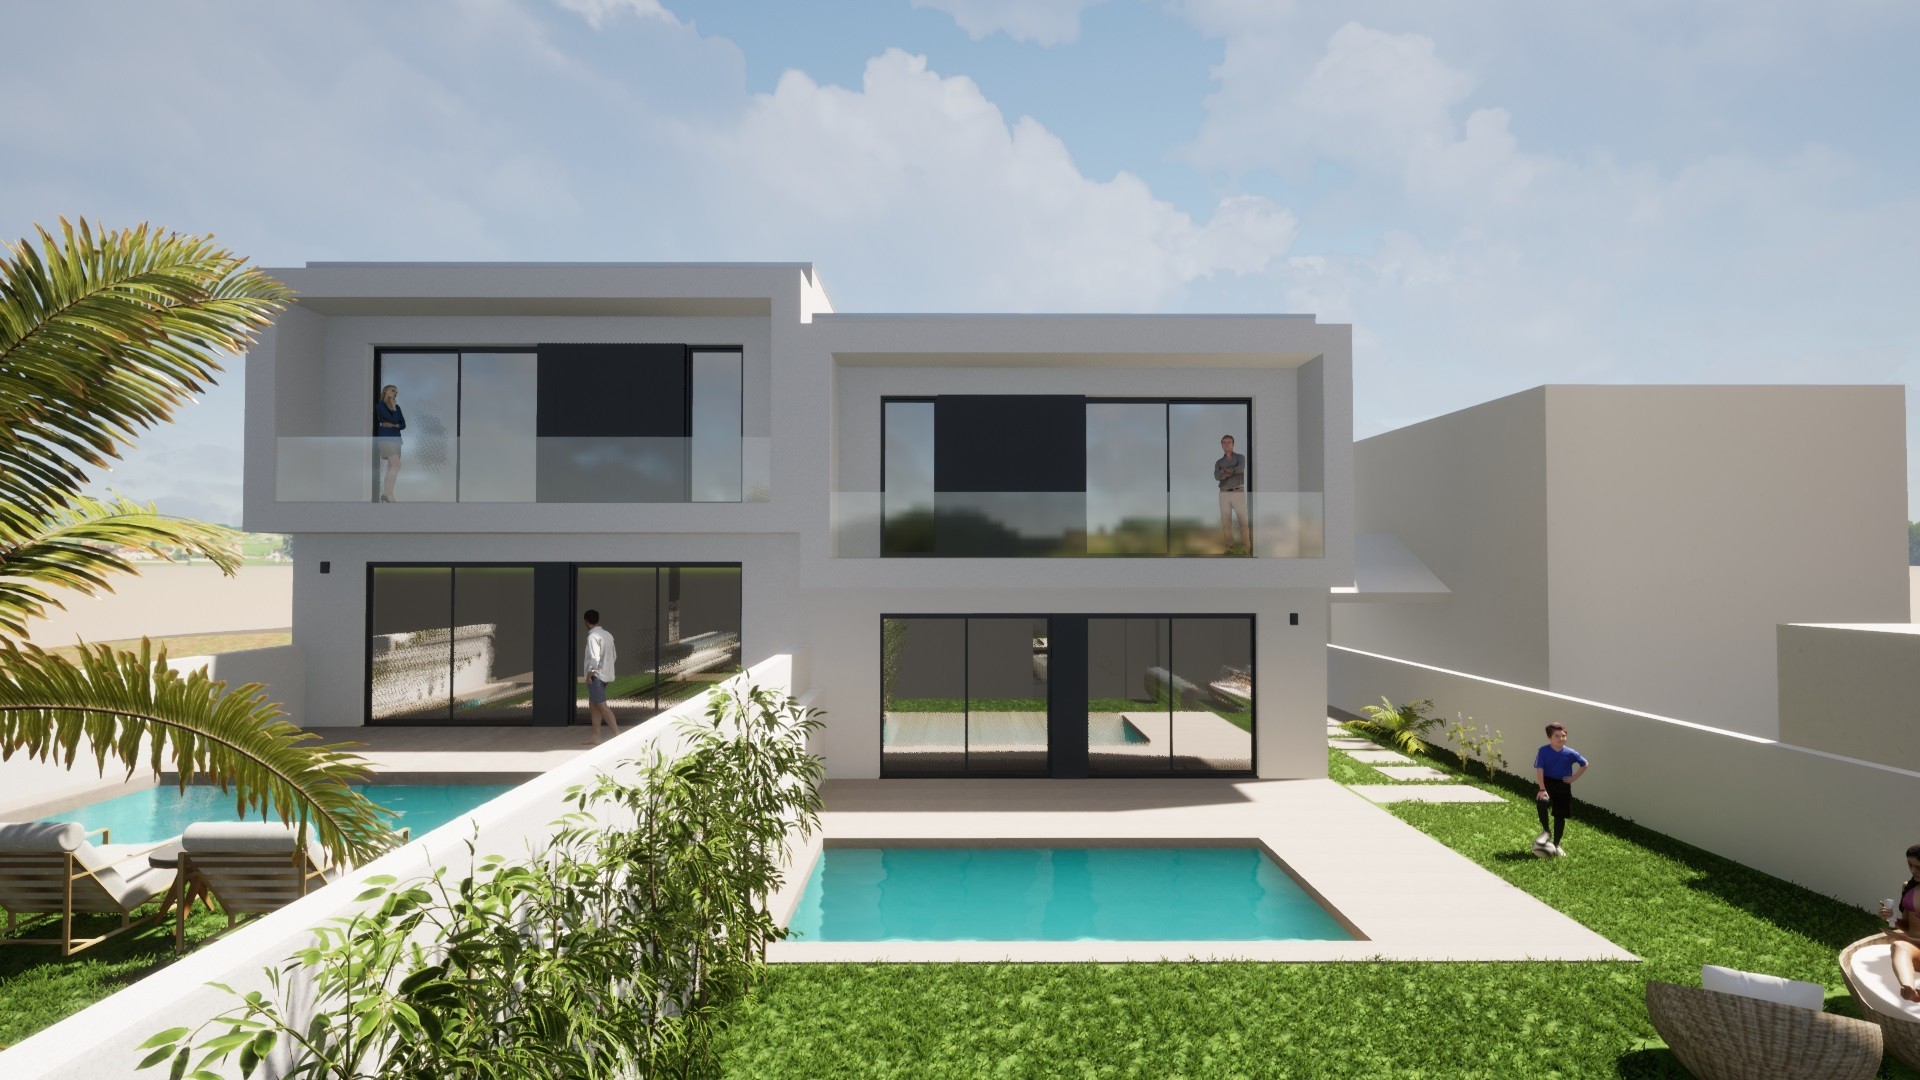 Maison T3 sur deux fronts, avec piscine - Arcozelo, Vila Nova de Gaia